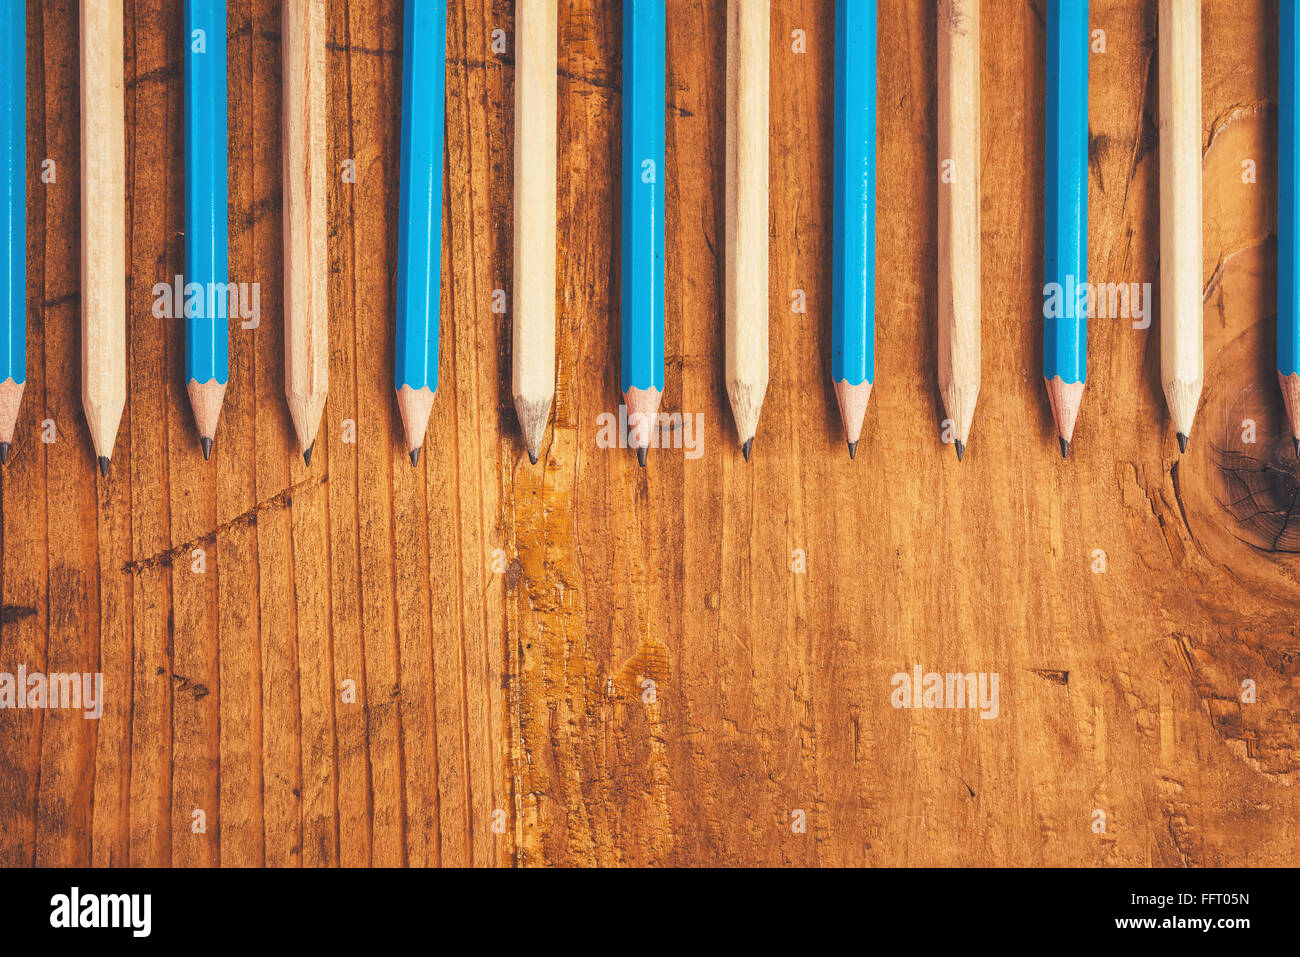 Bleu et marron crayons alignés sur une table en bois rustique, vue supérieure avec copie espace vierge Banque D'Images